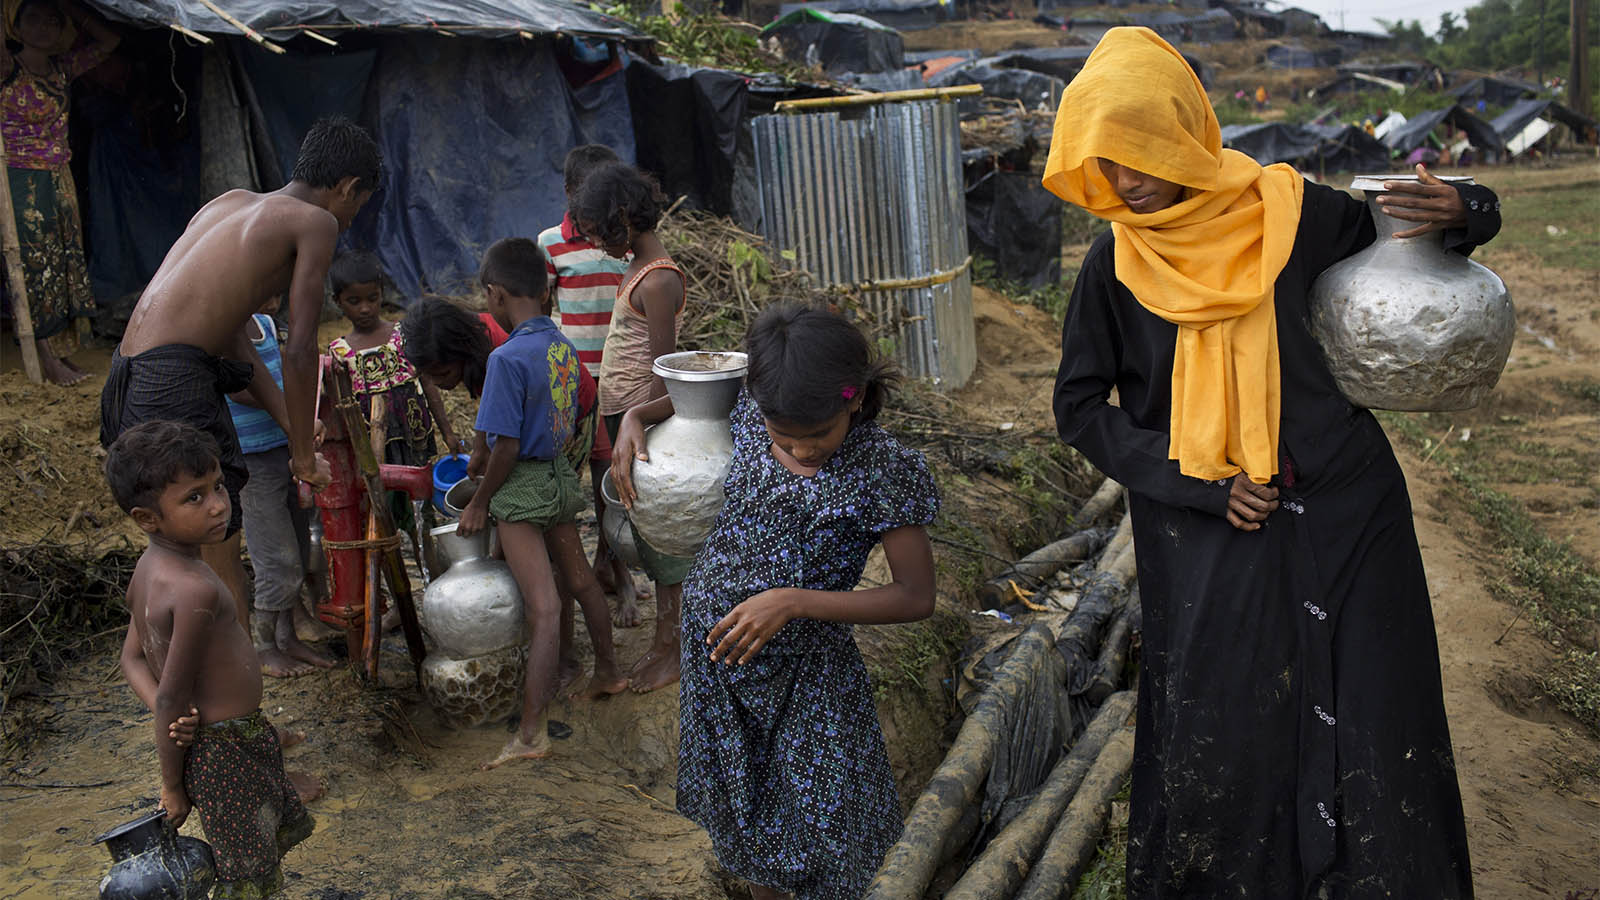 משפחה ממיעוט הרוהינגיה שואבת מים מבאר במחנה פליטים בבנגלדש (צילום: AP Photo/Bernat Armangue)